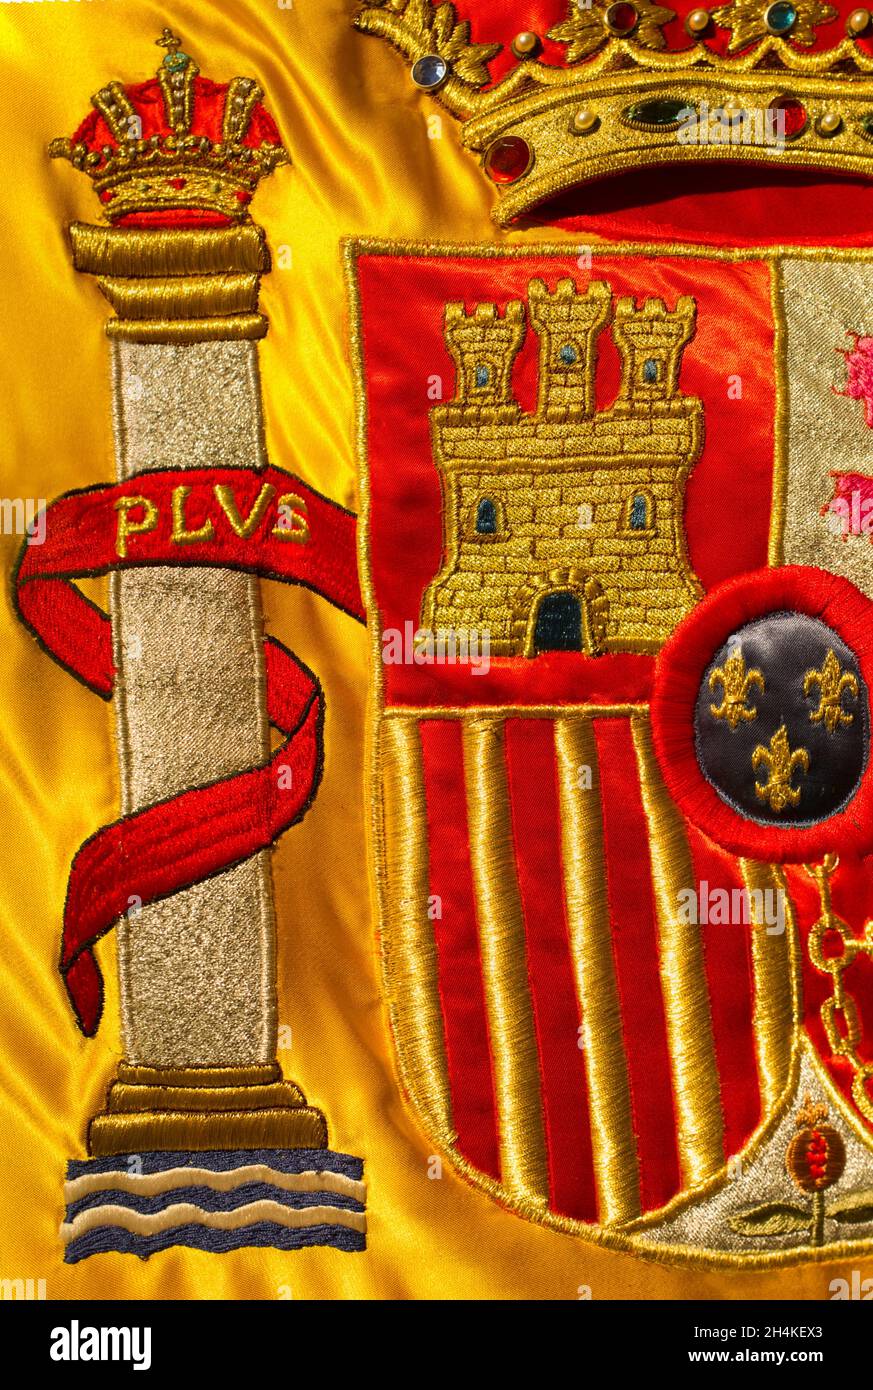 Armoiries de la nation espagnole richement brodées sur son drapeau.Gros plan. Banque D'Images